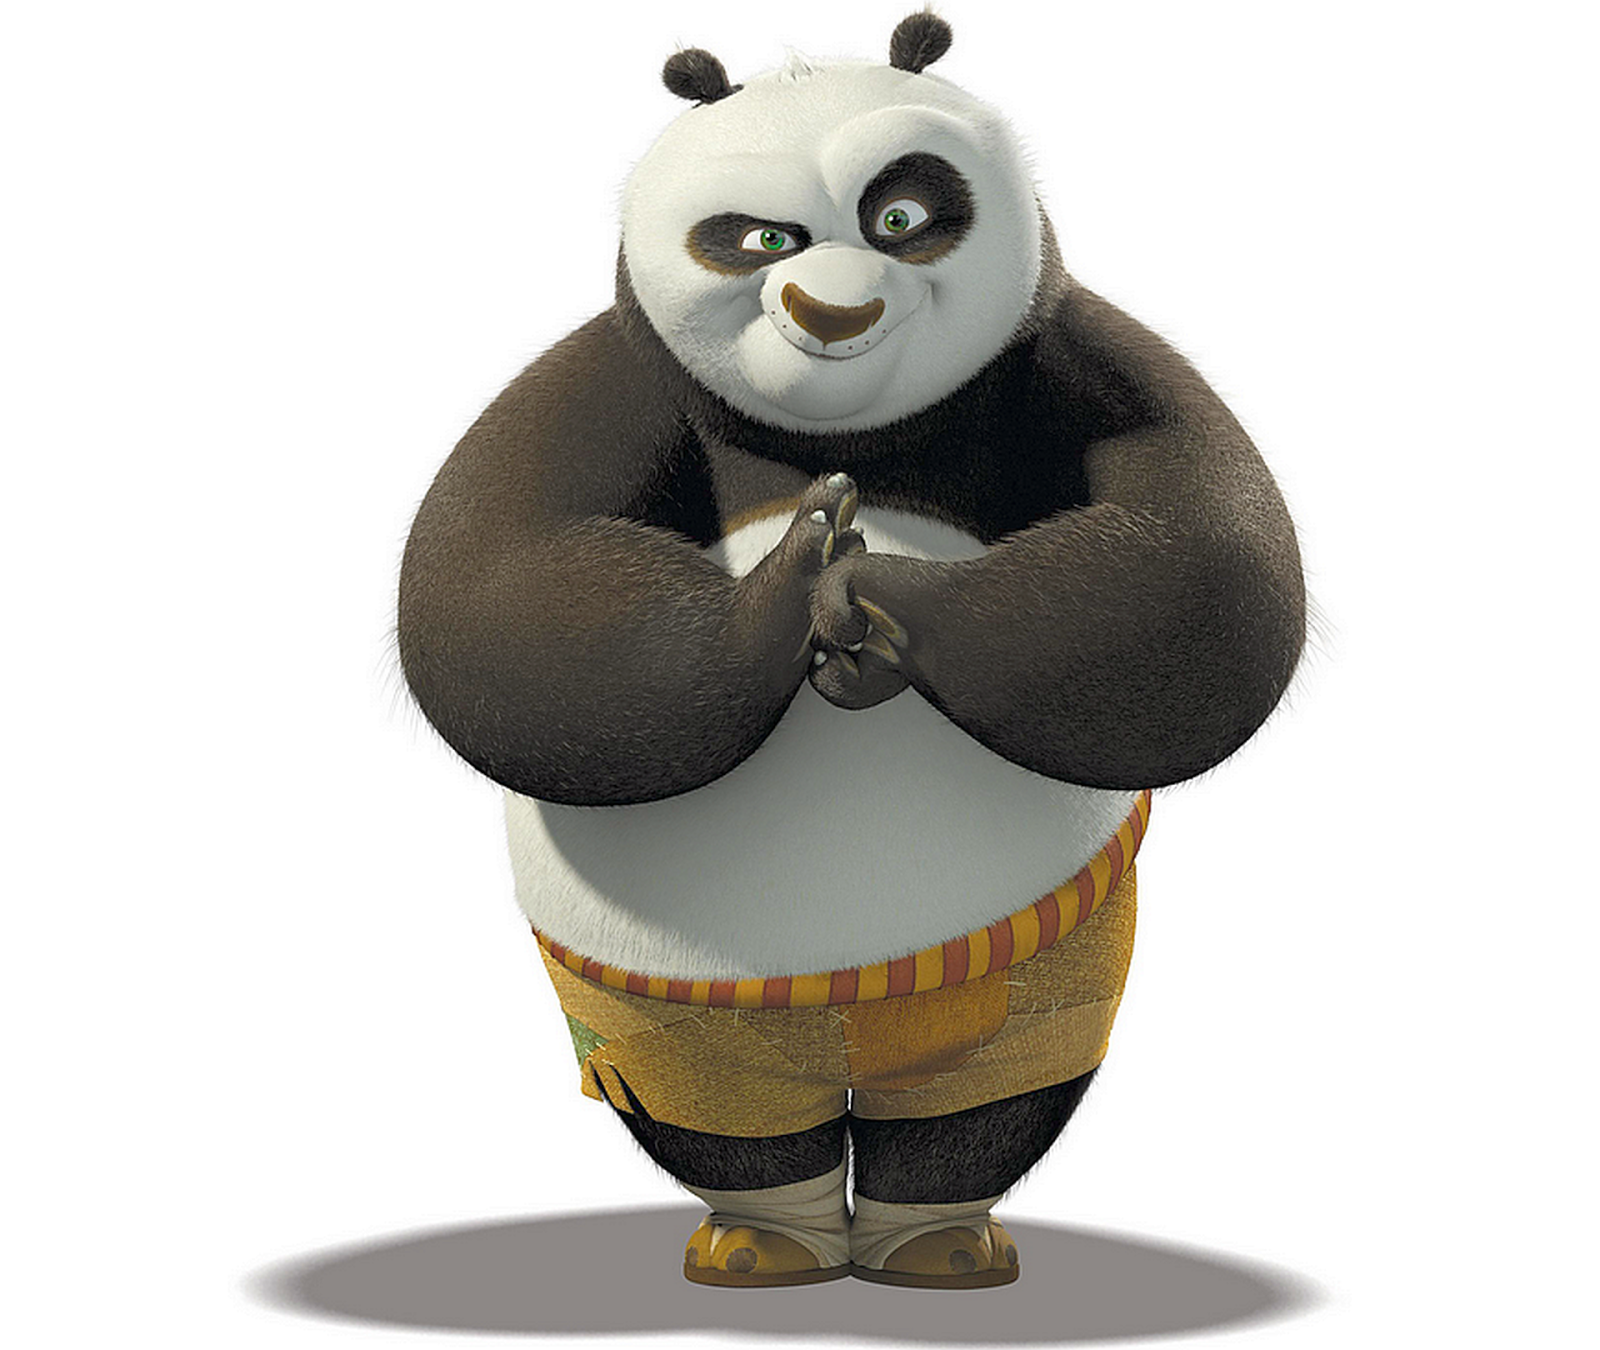 juegos de kung fu panda